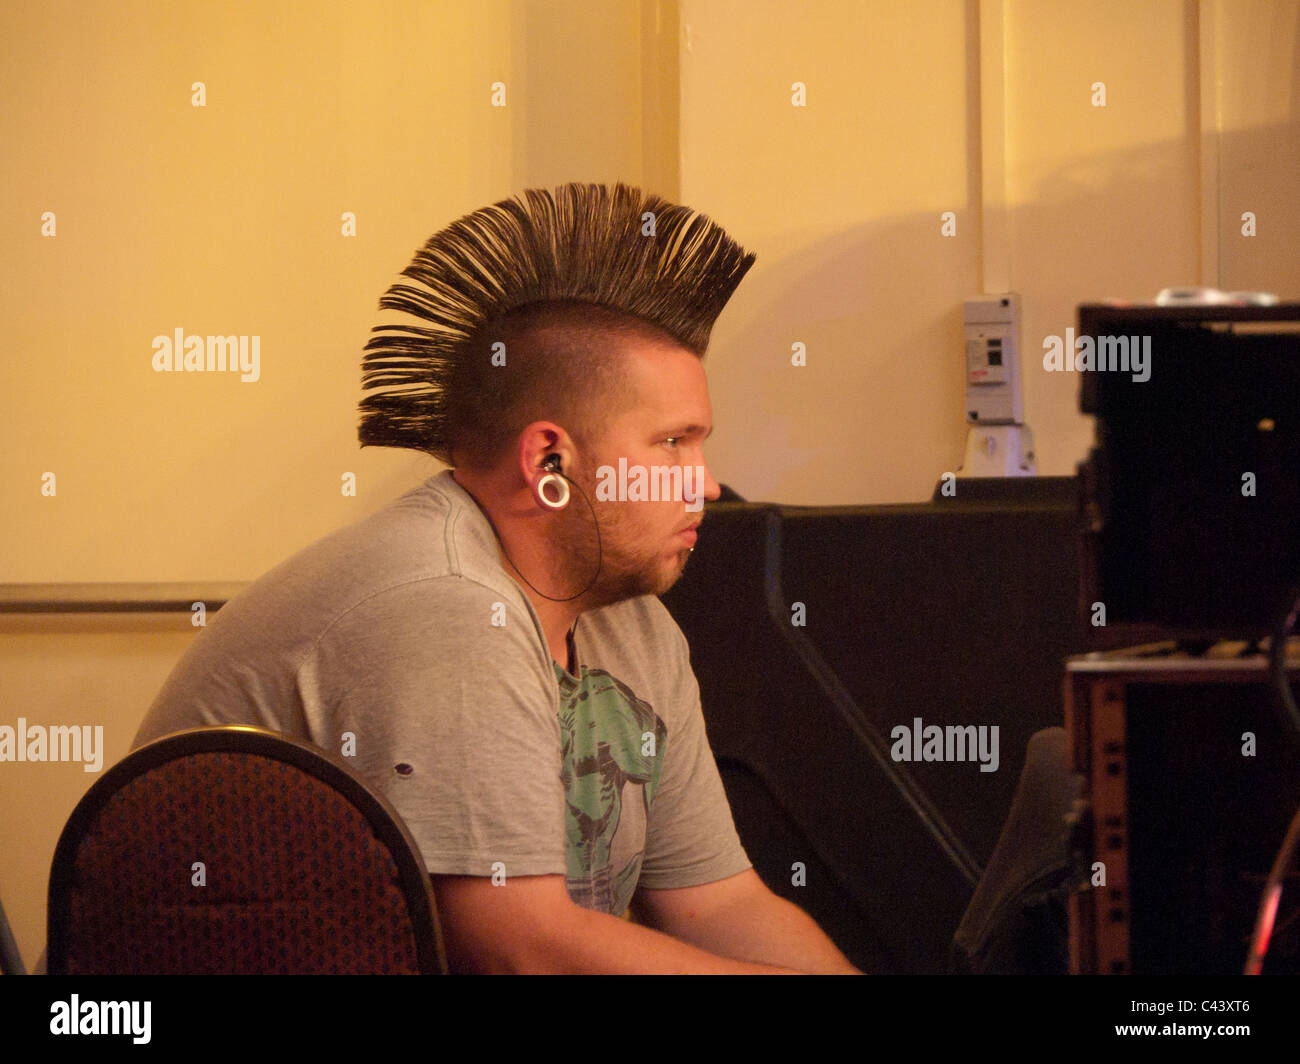 junger Mann mit Irokesenschnitt Haarschnitt und Ohrring hört Musik im club Stockfoto